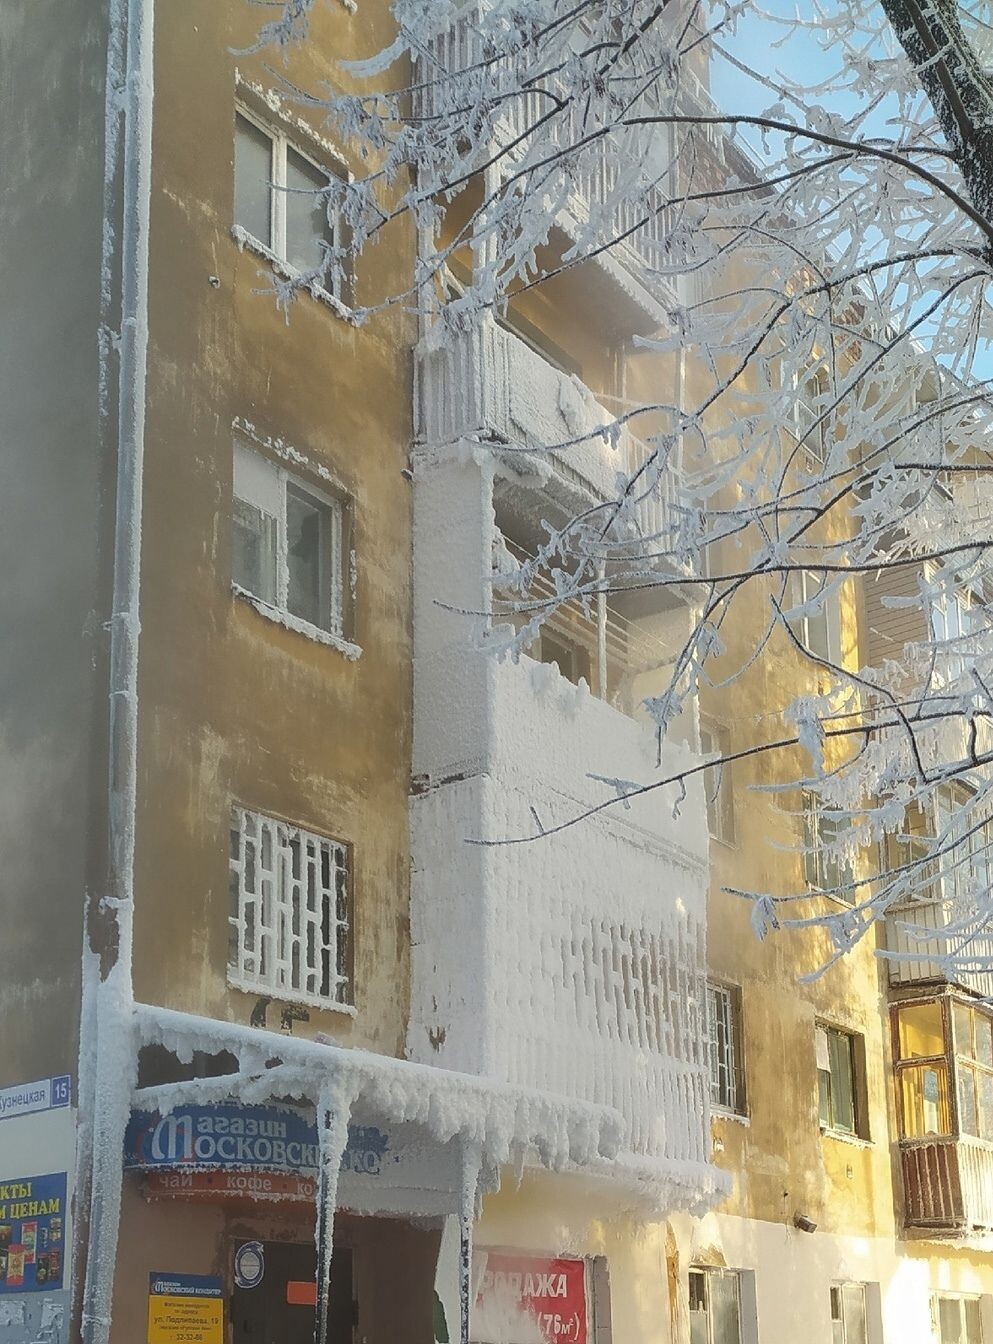 Замок Снежной королевы нашли в Костроме после аварии на теплосетях